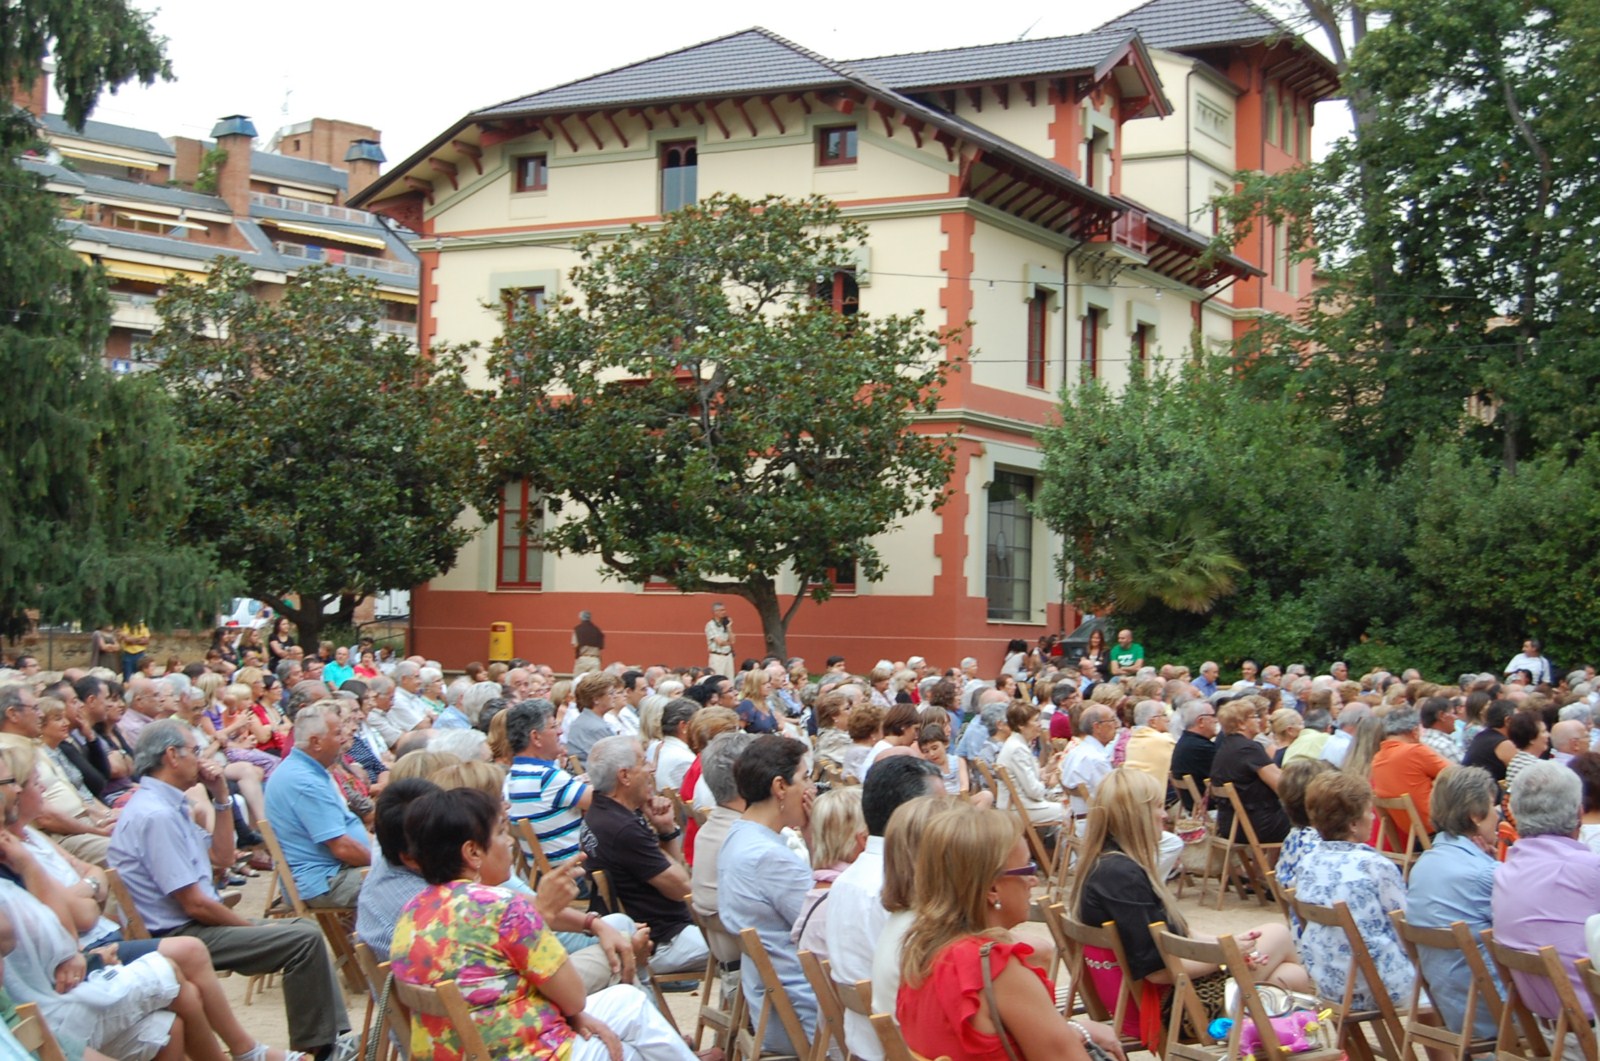 Concert de gala amb l'Orquestra Montgrins, diumenge 15, al parc de Ca l'Alfaro